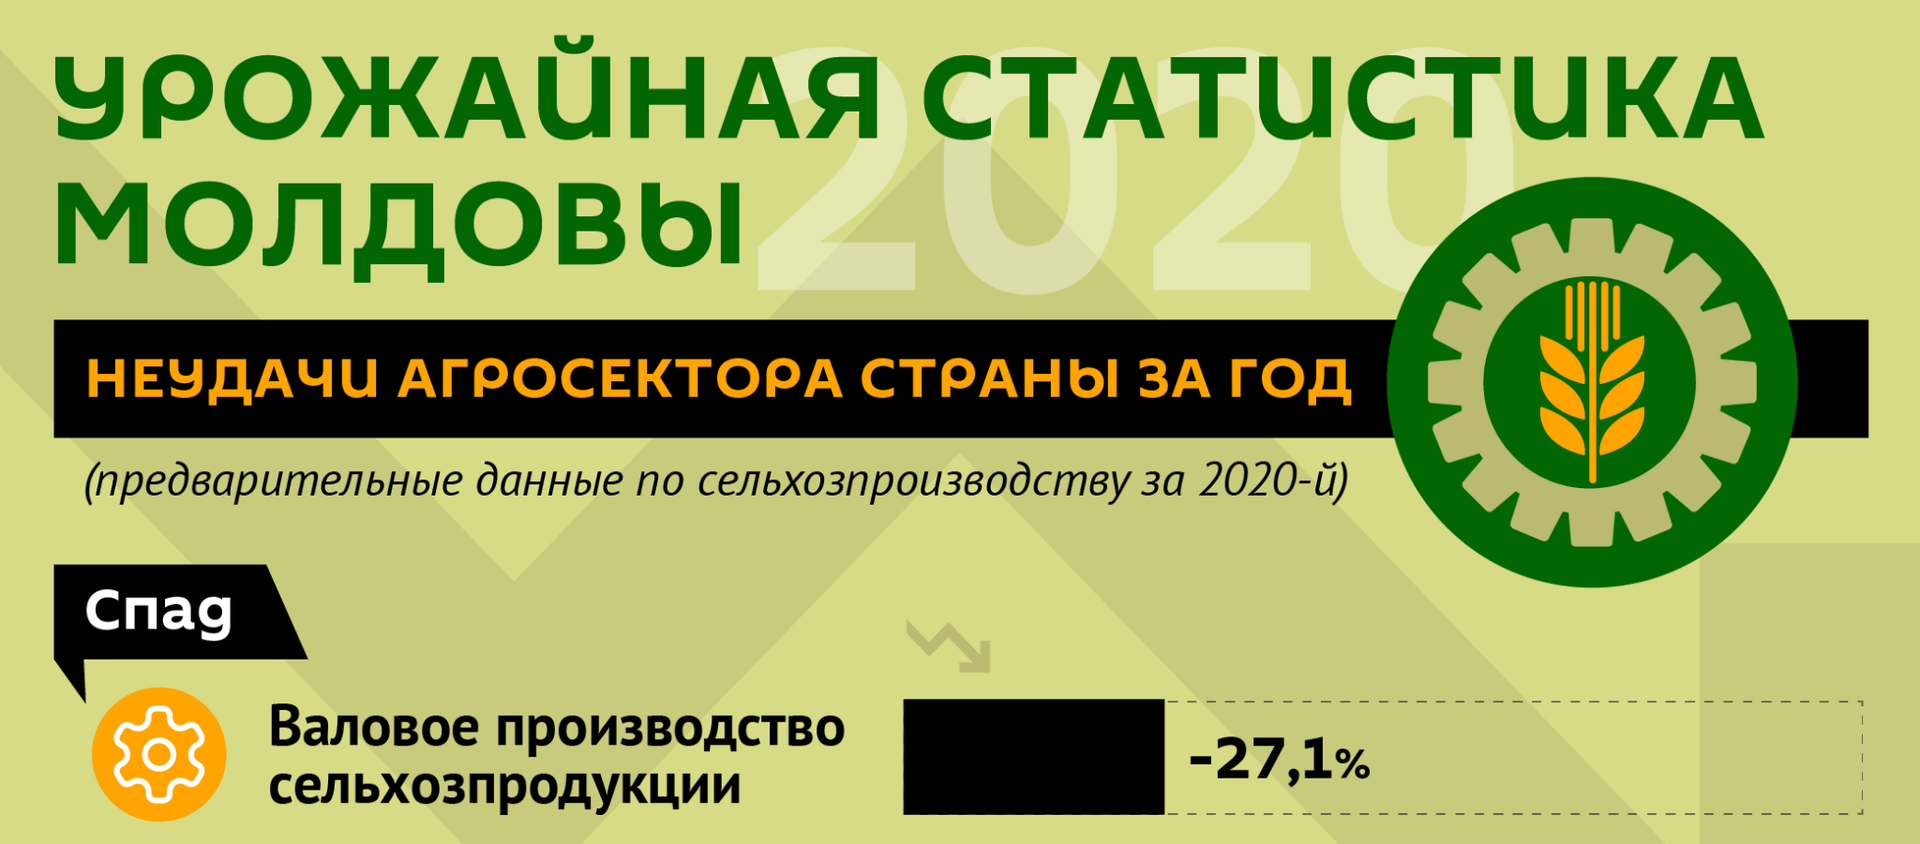 Урожайная статистика Молдовы  - Sputnik Молдова, 1920, 19.02.2021